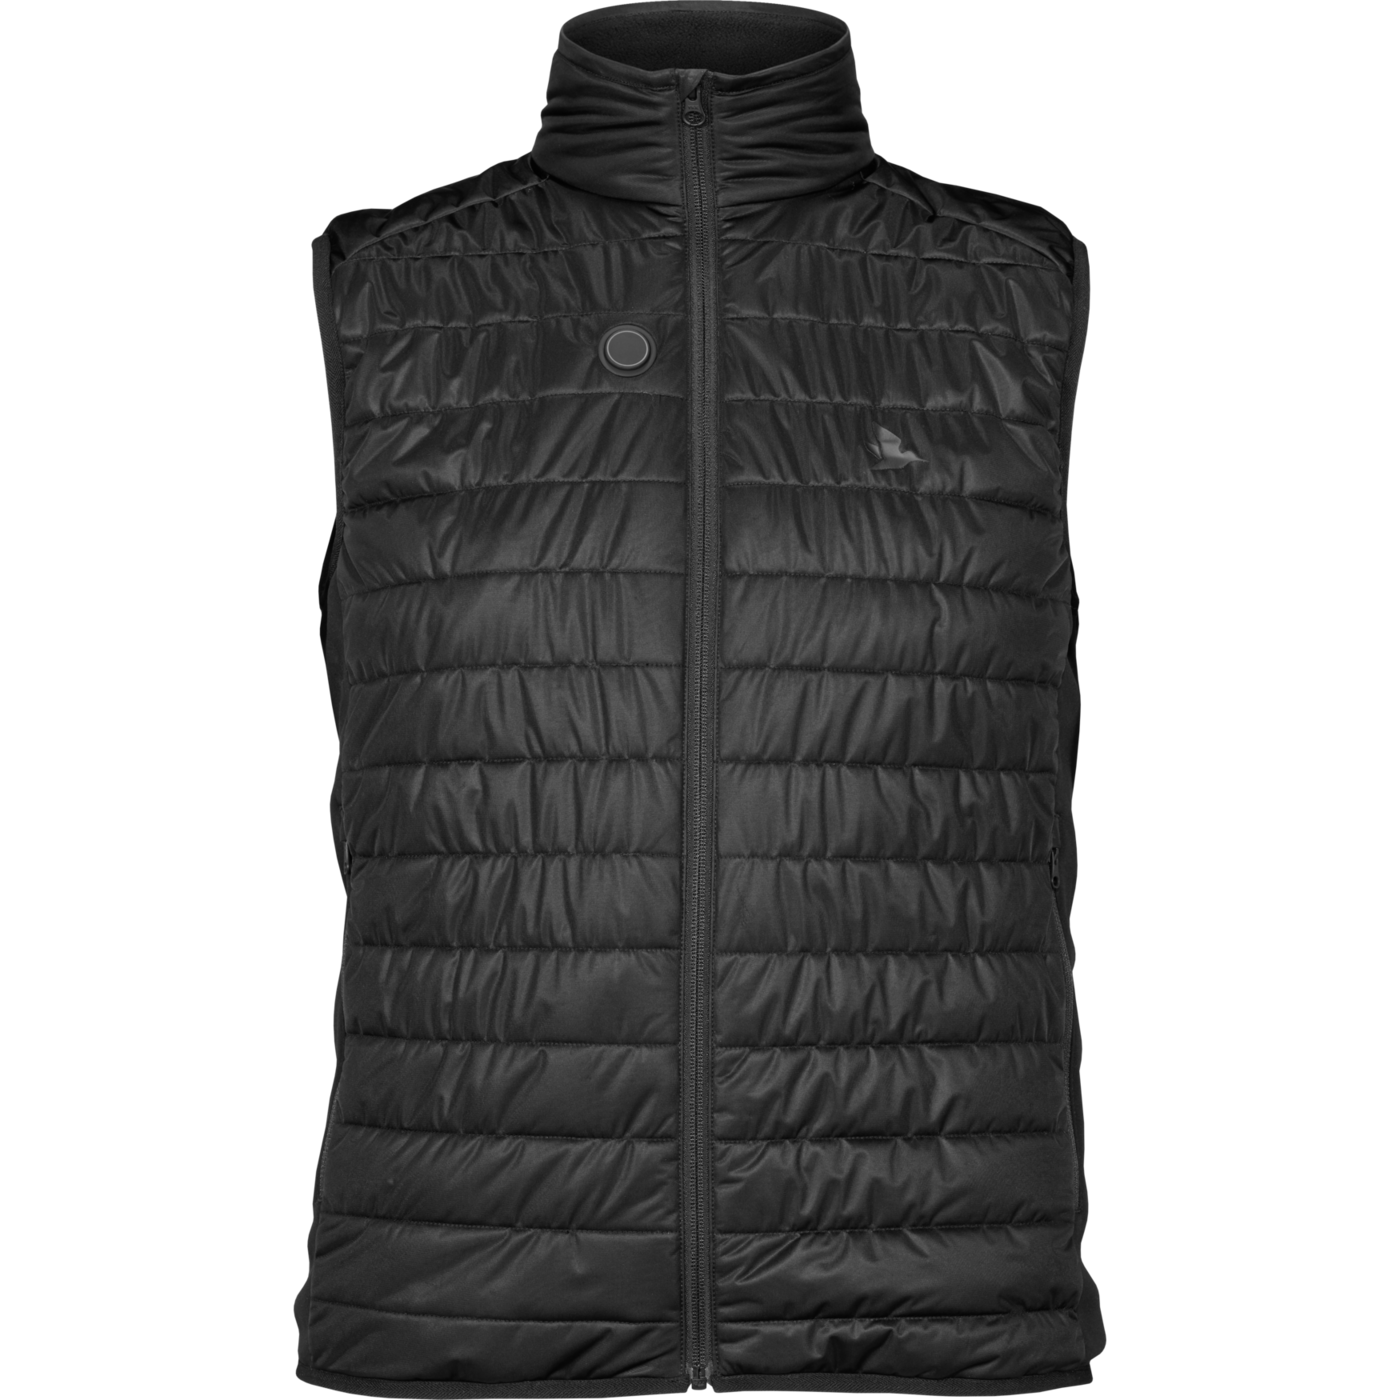 Seeland Heat vest - Black - 2XL thumbnail